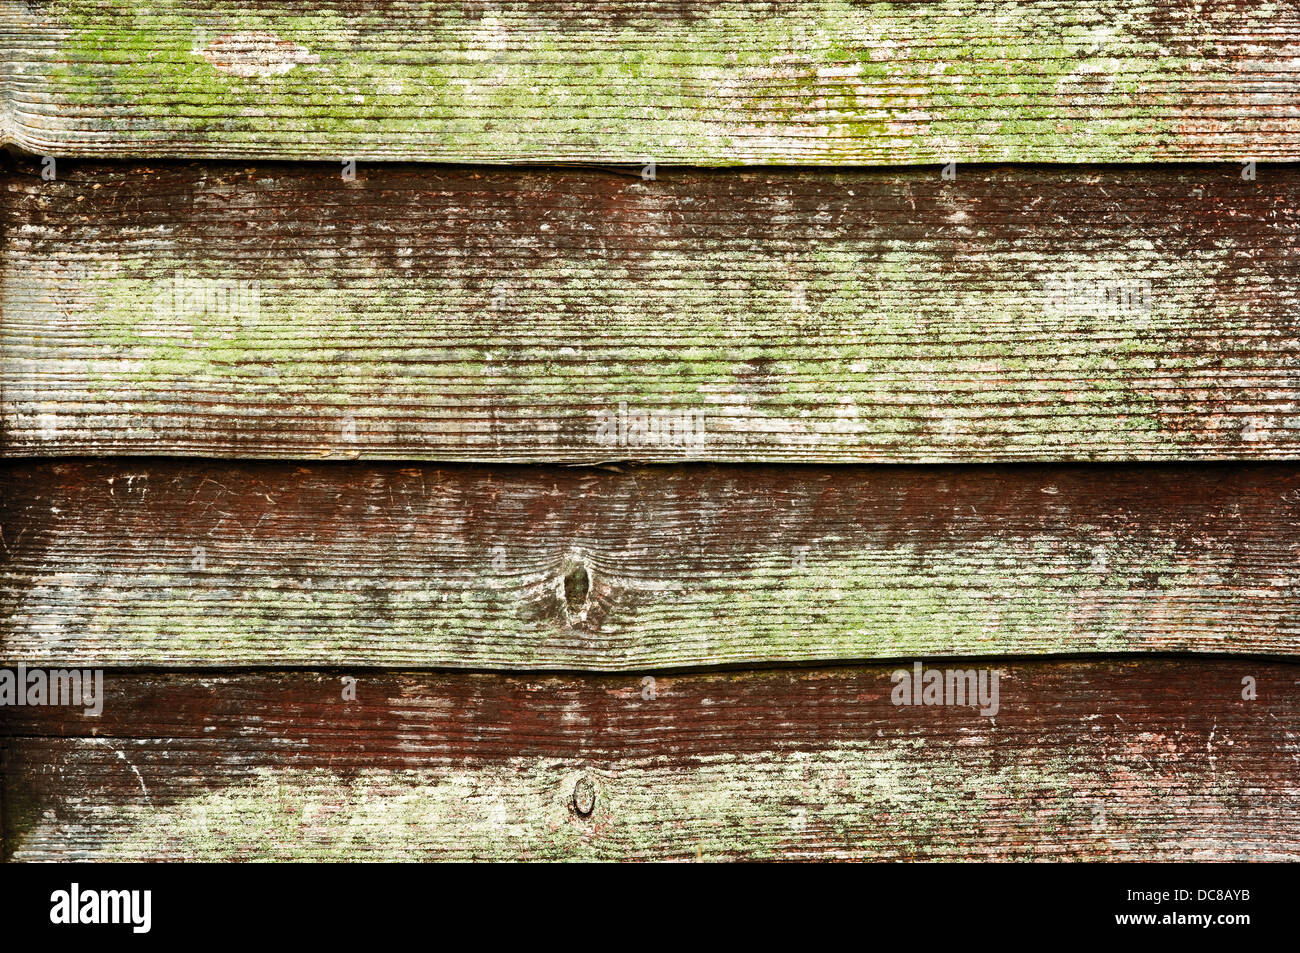 La textura de la madera, con aspecto erosionado, antiguo y oscuro Foto de stock